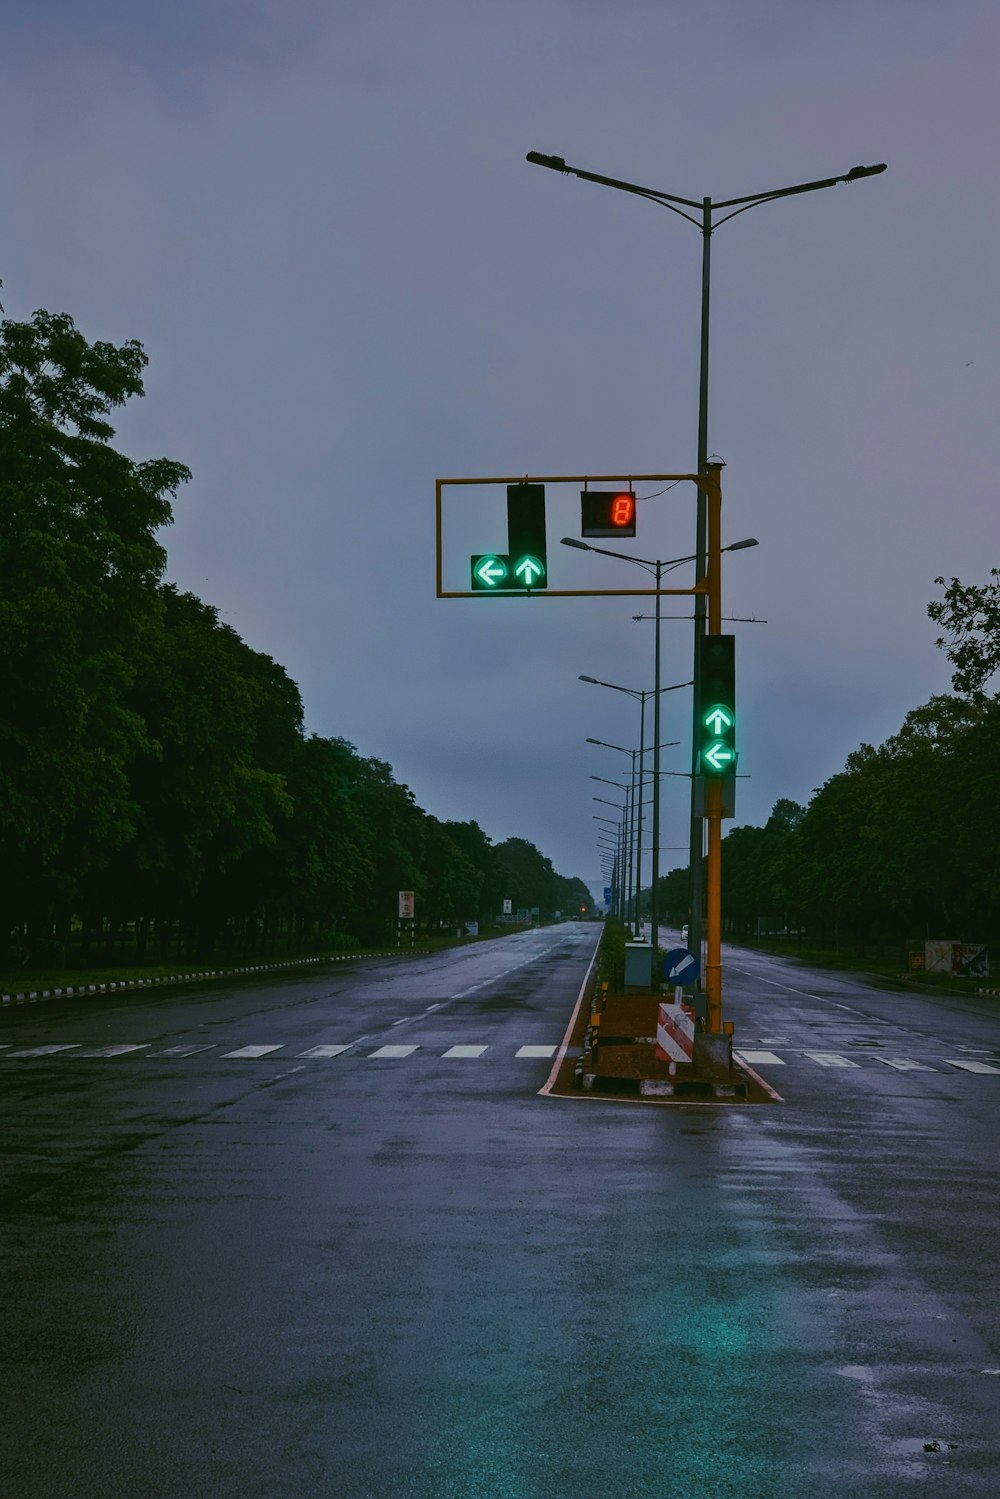 green traffic light on gray asphalt road